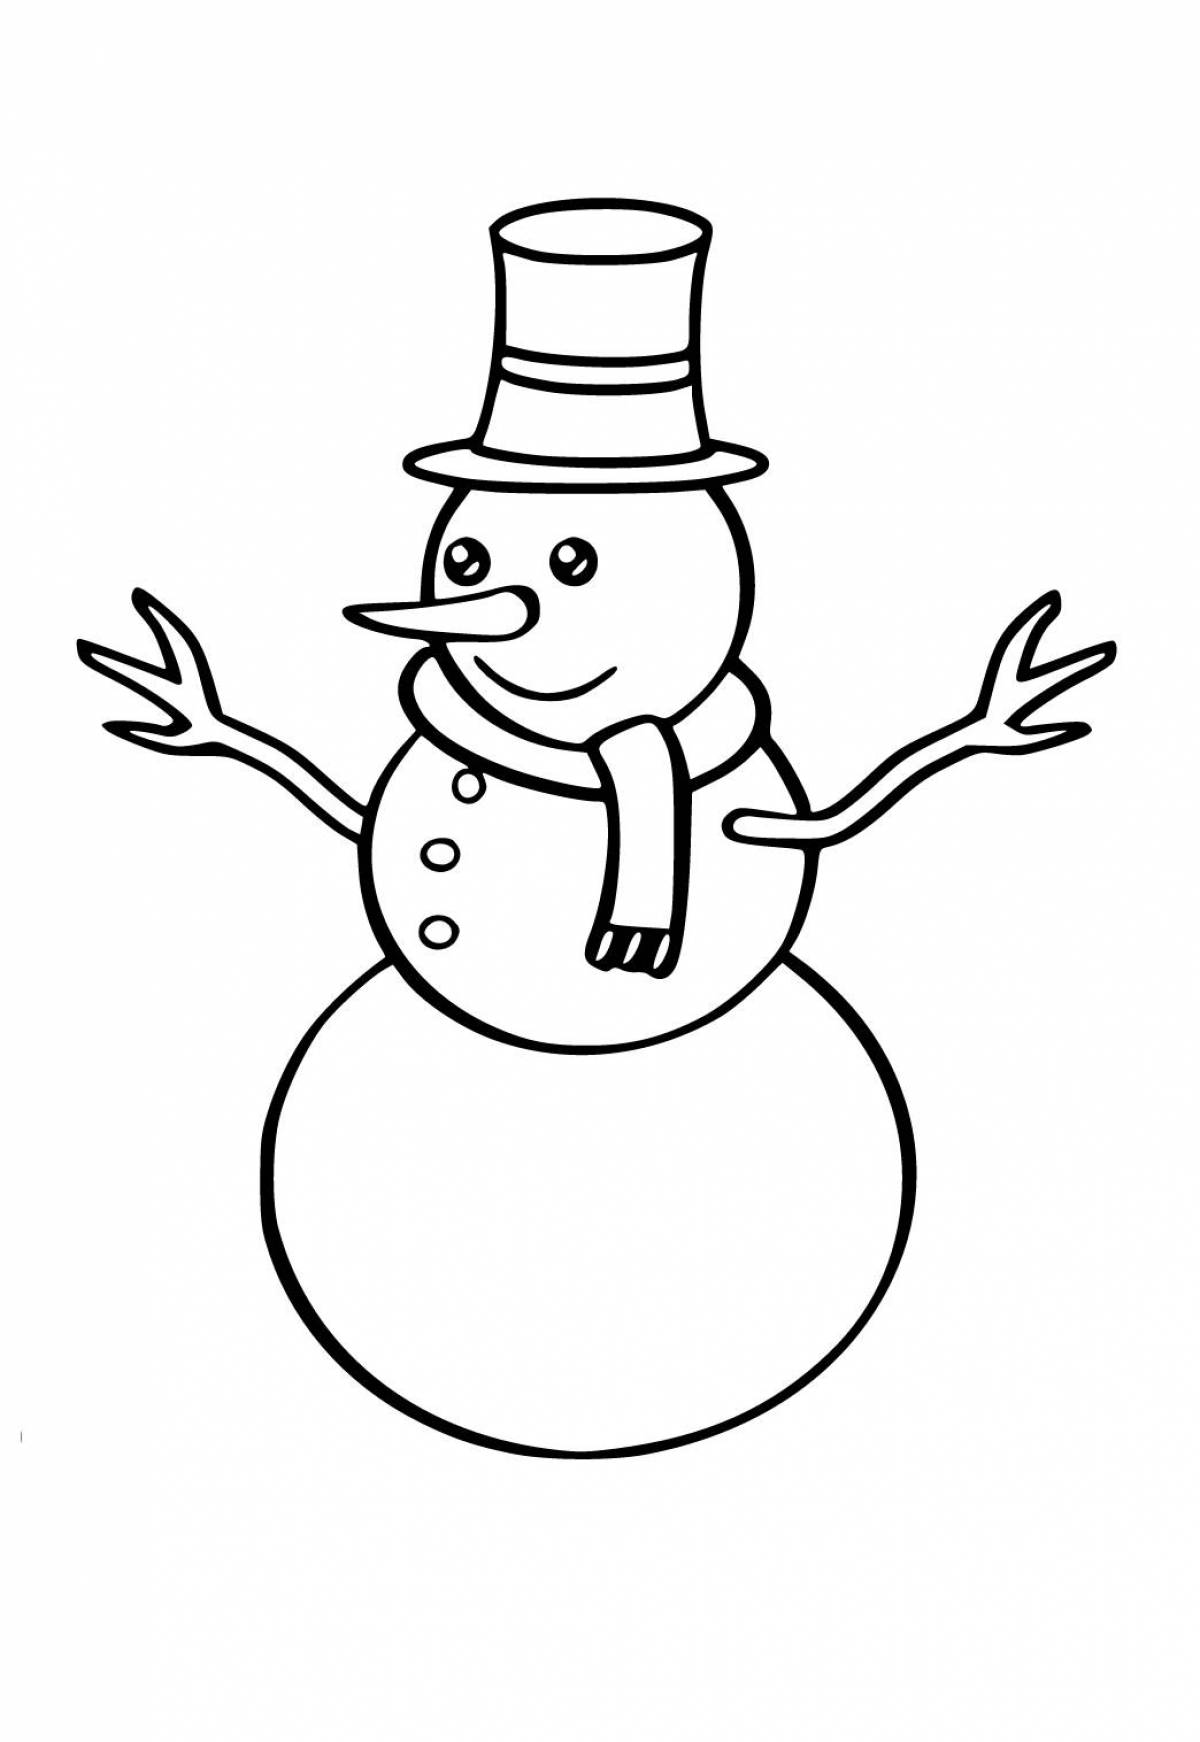 Живая раскраска снеговик для детей 6-7 лет